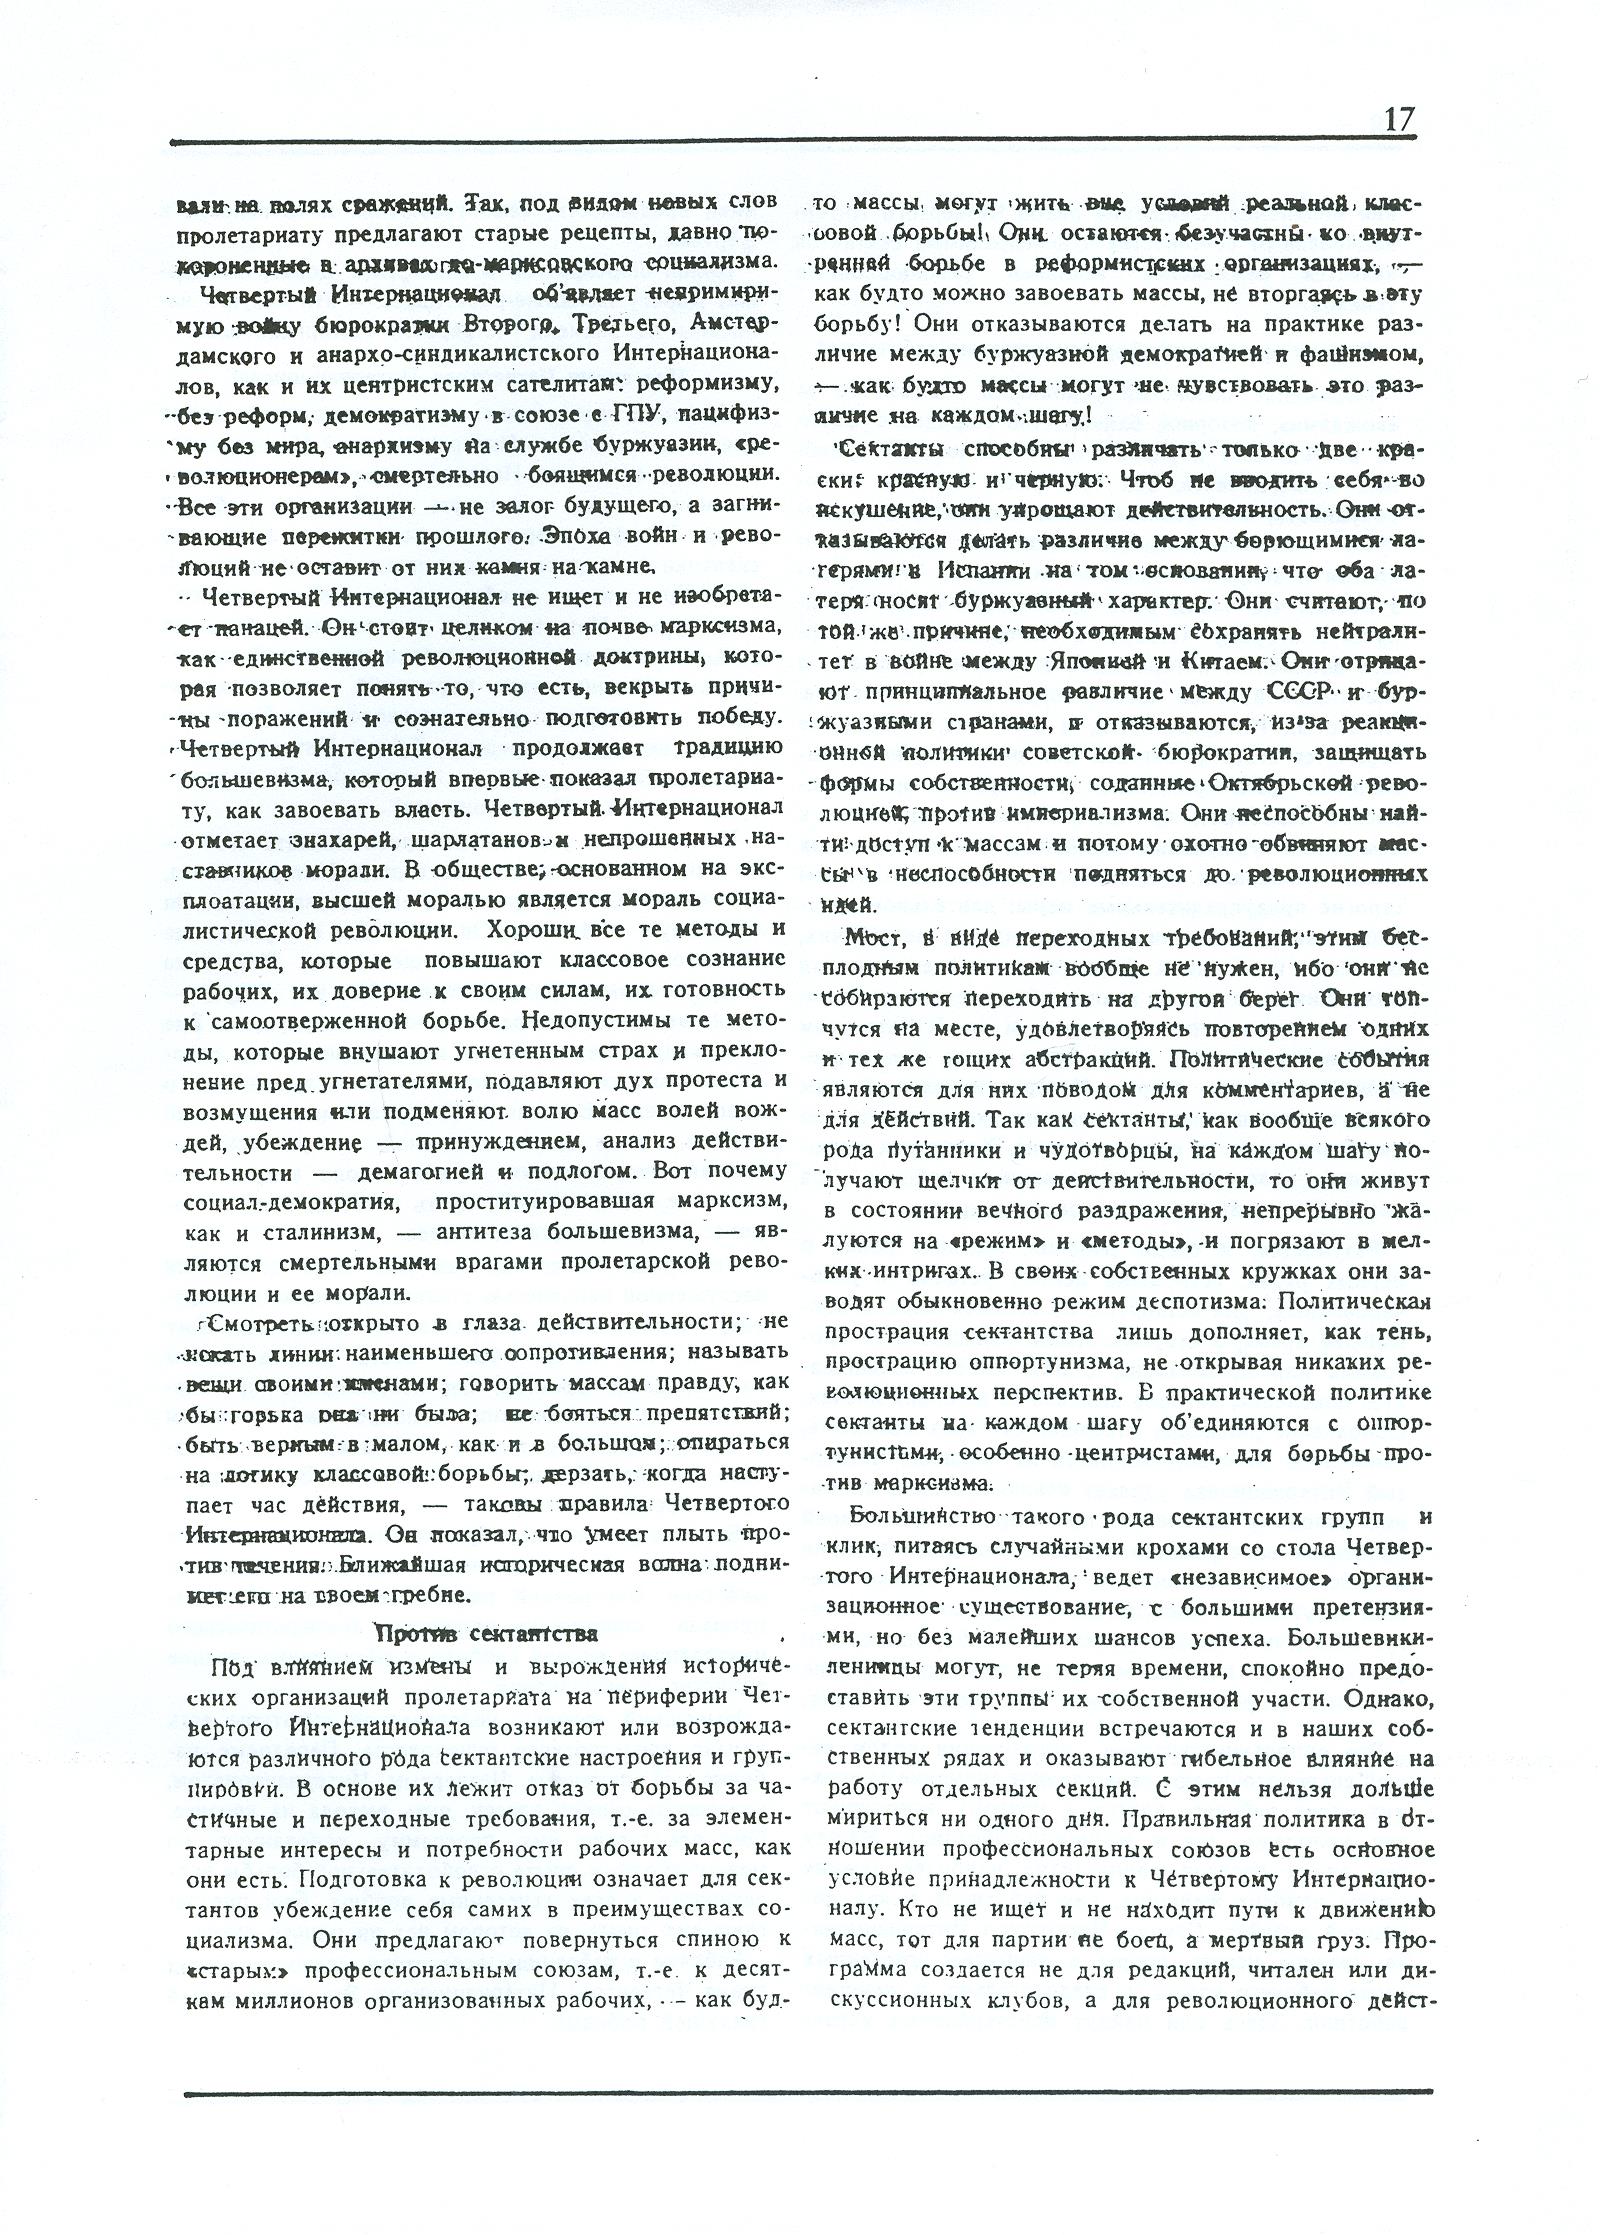 Dagli archivi del bolscevismo n. 1 (marzo 1986) - pag. 17